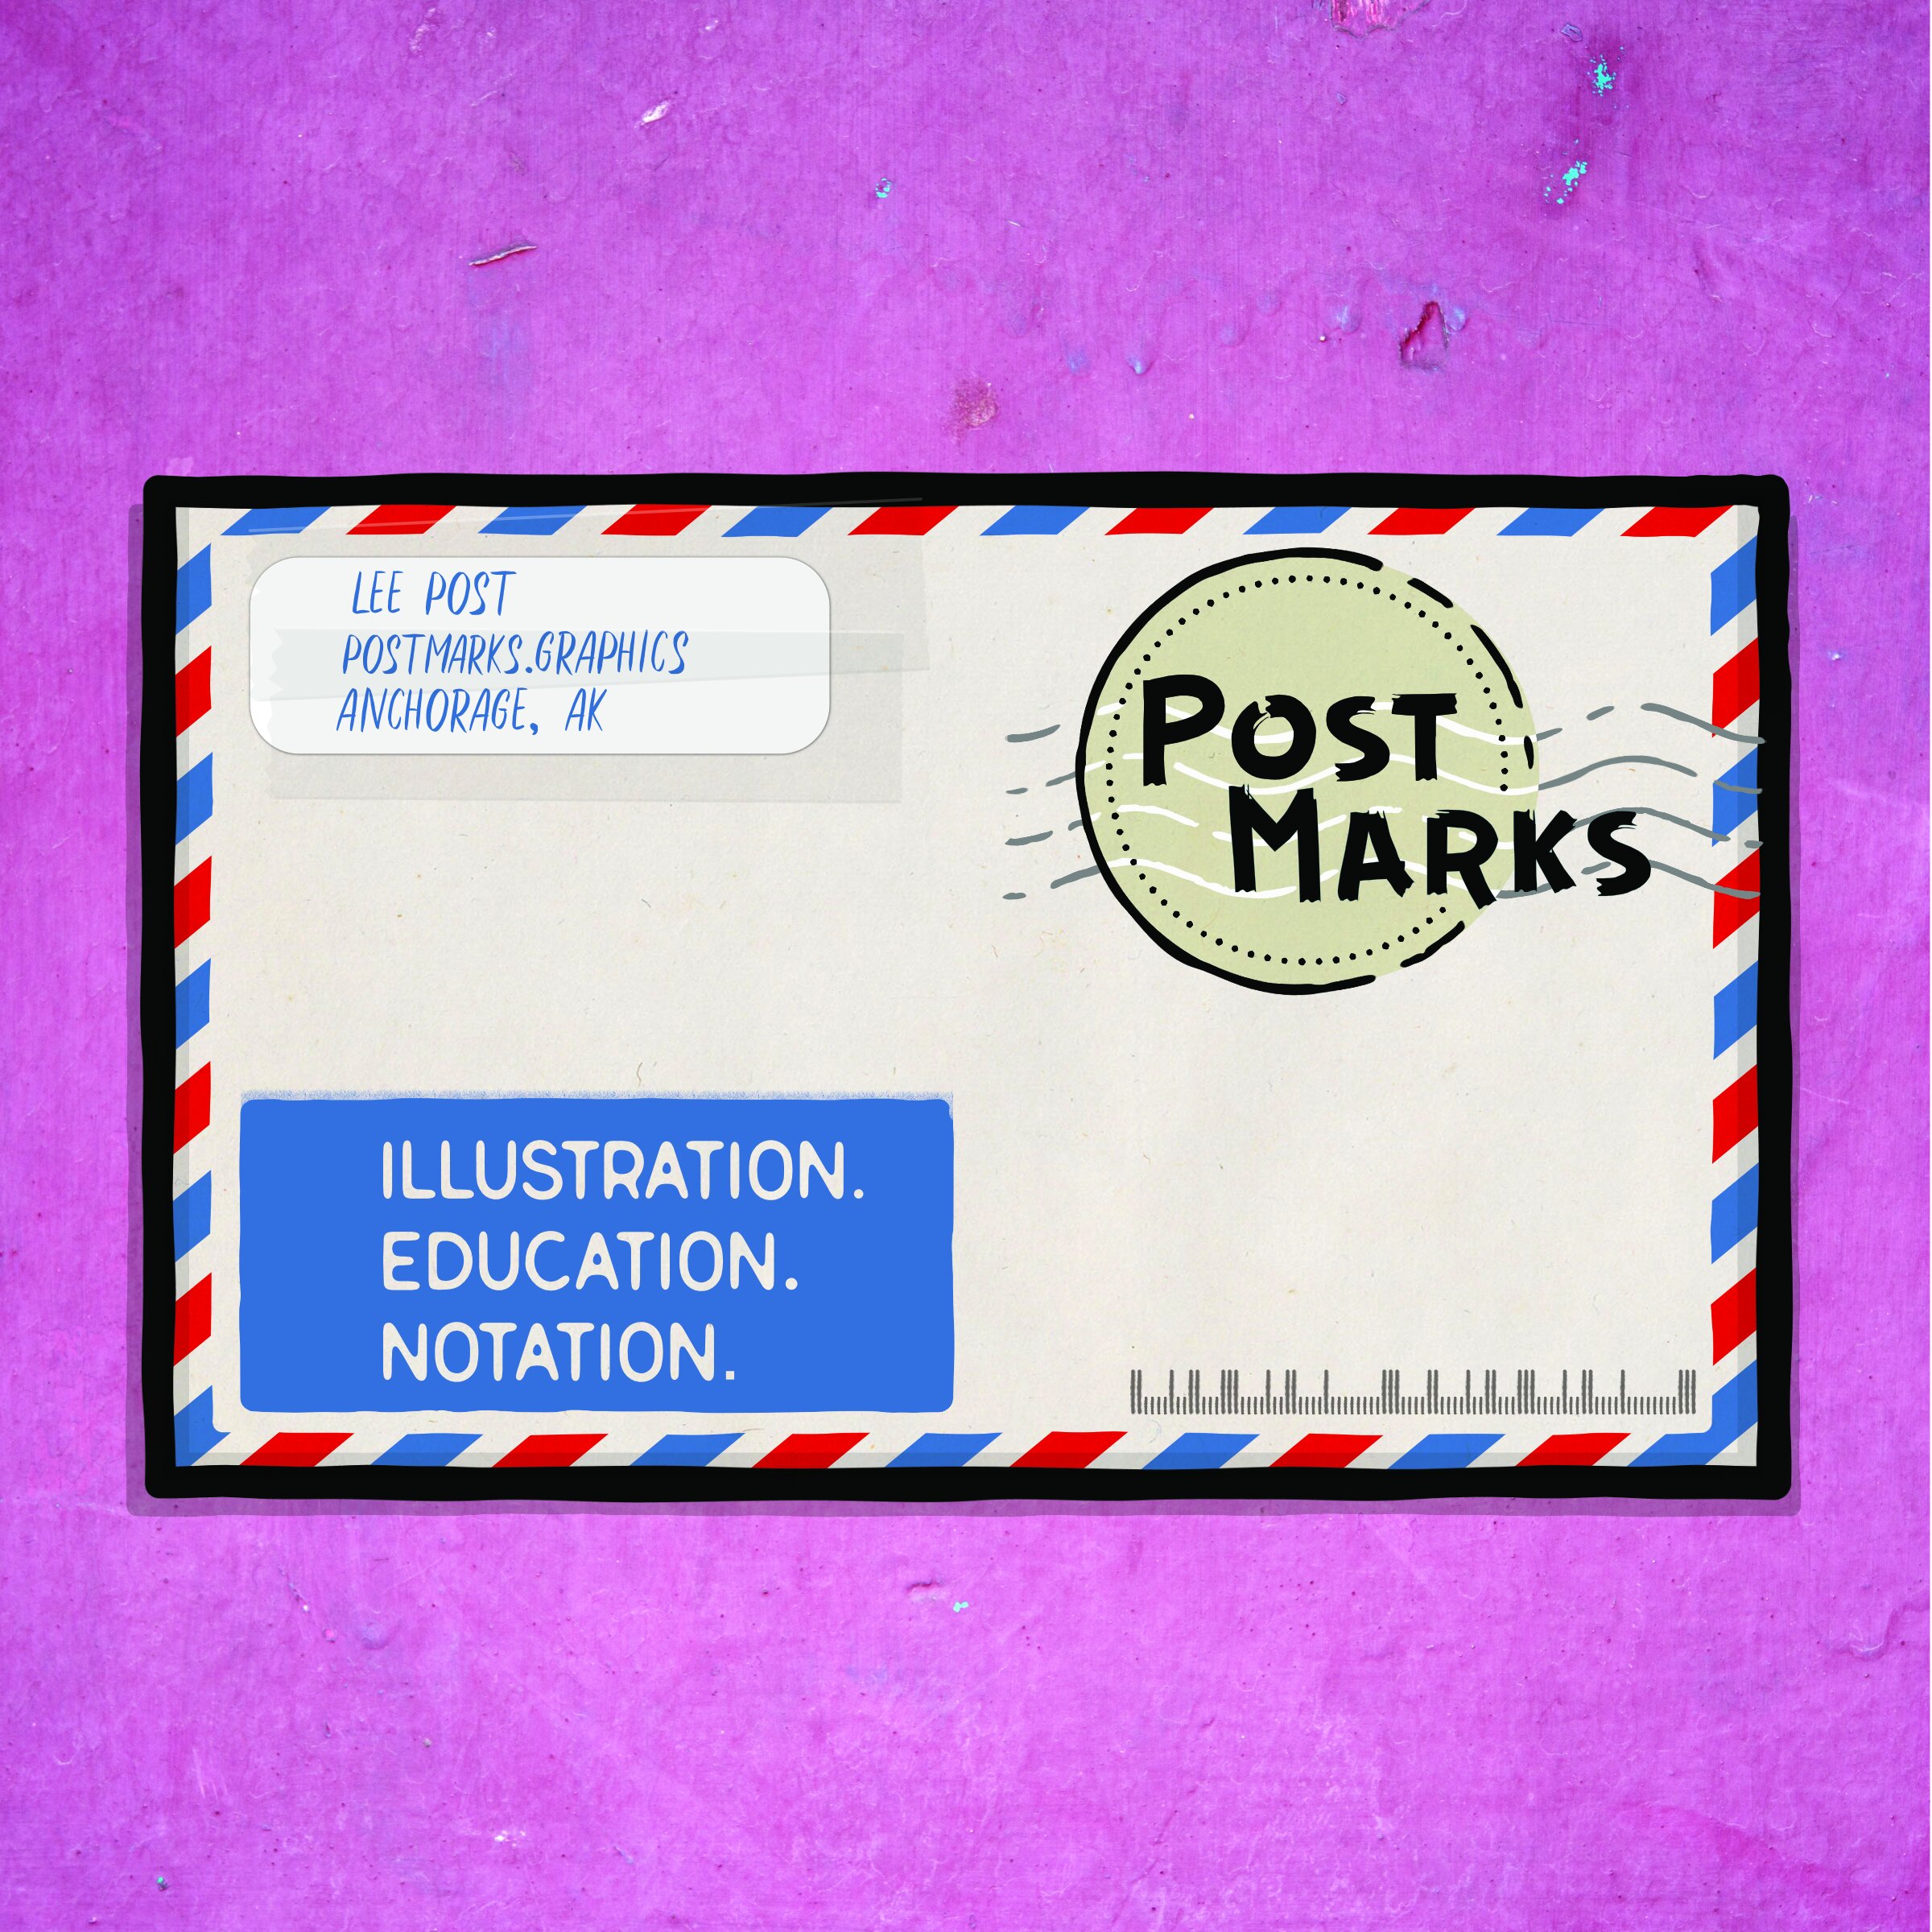 PostMarks letter-small.jpg